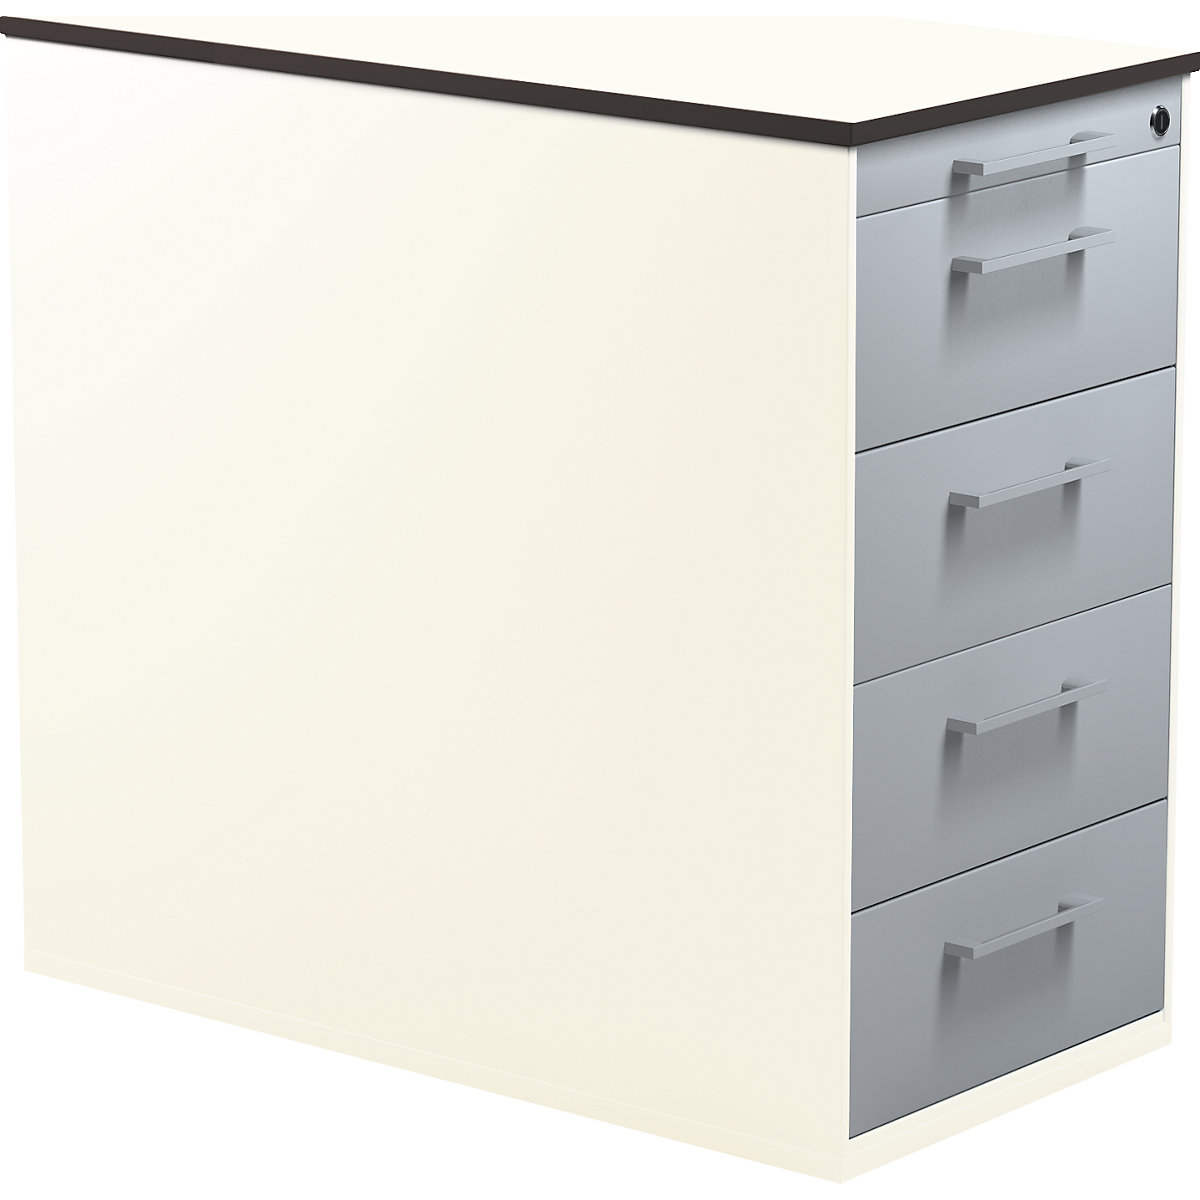 mauser Schubladencontainer mit Sockel, Höhe 708 mm, HPL-Vollkernplatte, 4 Schubladen, reinweiß / alusilber / weiß